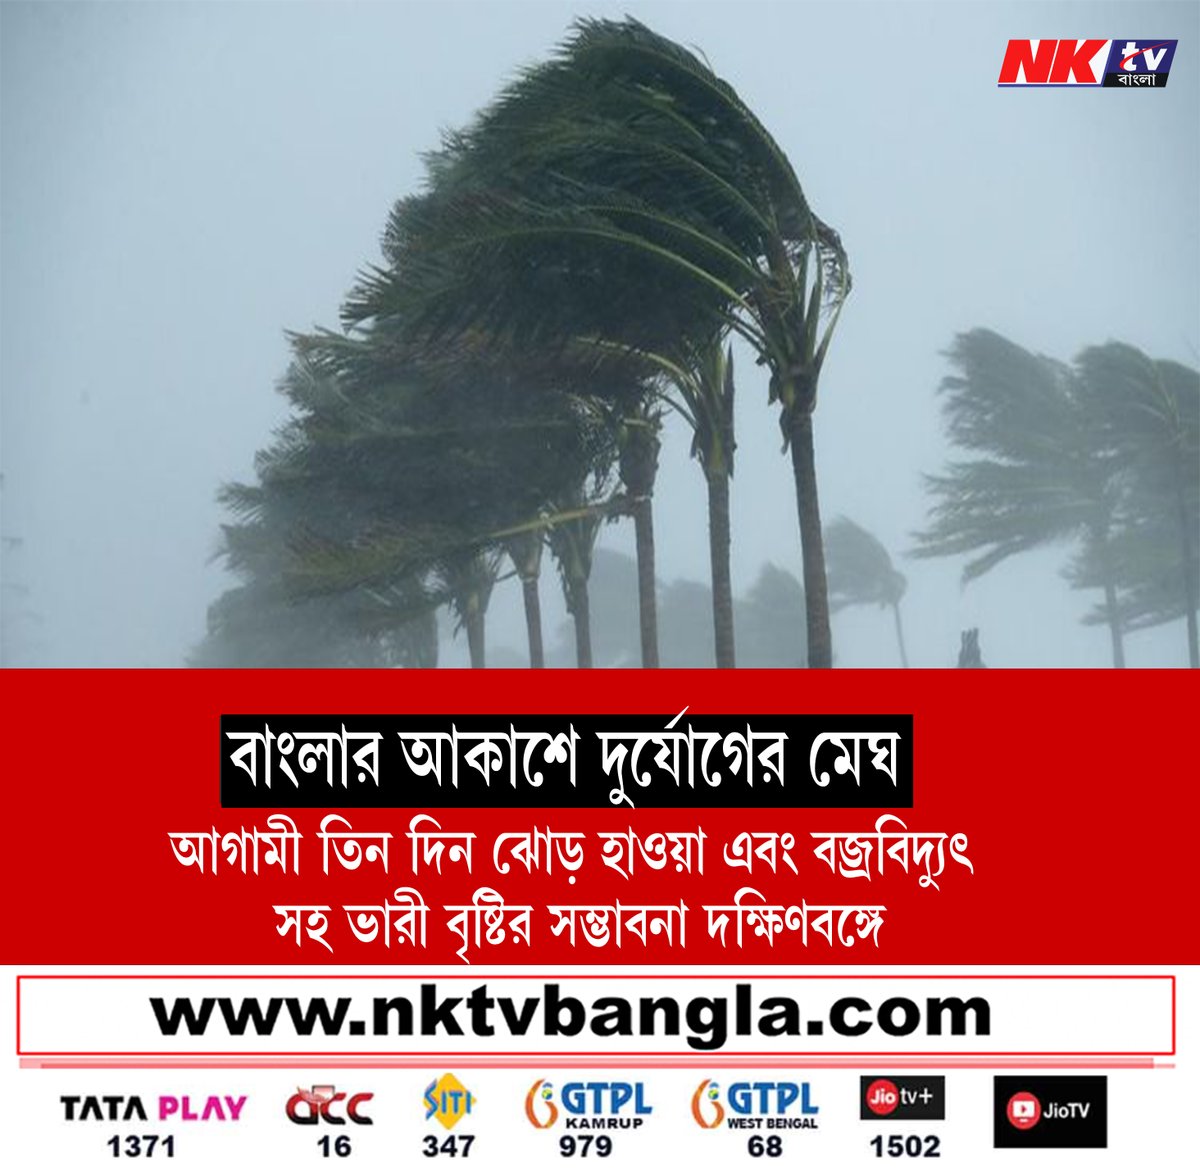 ধেয়ে আসছে ঘুর্ণিঝড়

#weather #WeatherAlert #SouthBengal #cyclone #WeatherNews #WeatherUpdate #Storm #nktvbangla #banglanewsupdate #nktv24x7 #update_news_bangla #westbengal